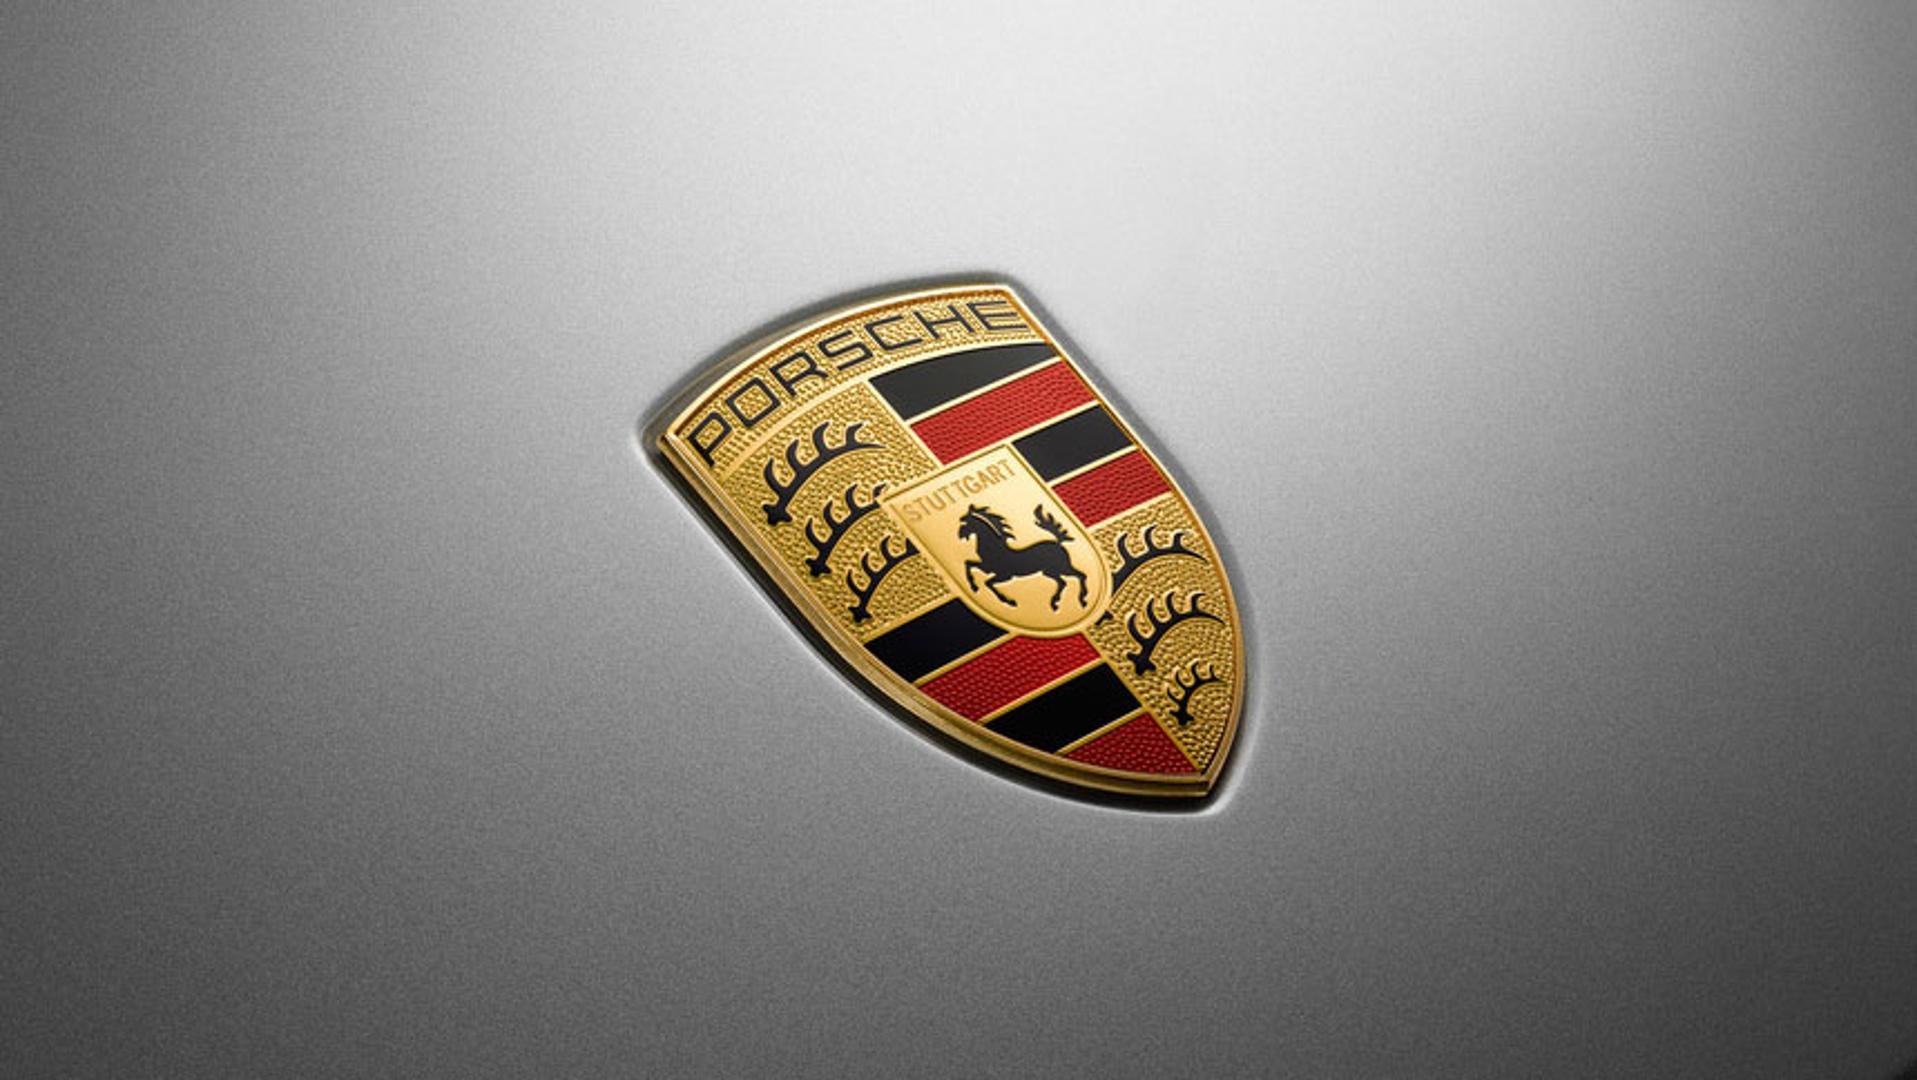 Porsche developing high-performance hydrogen engine